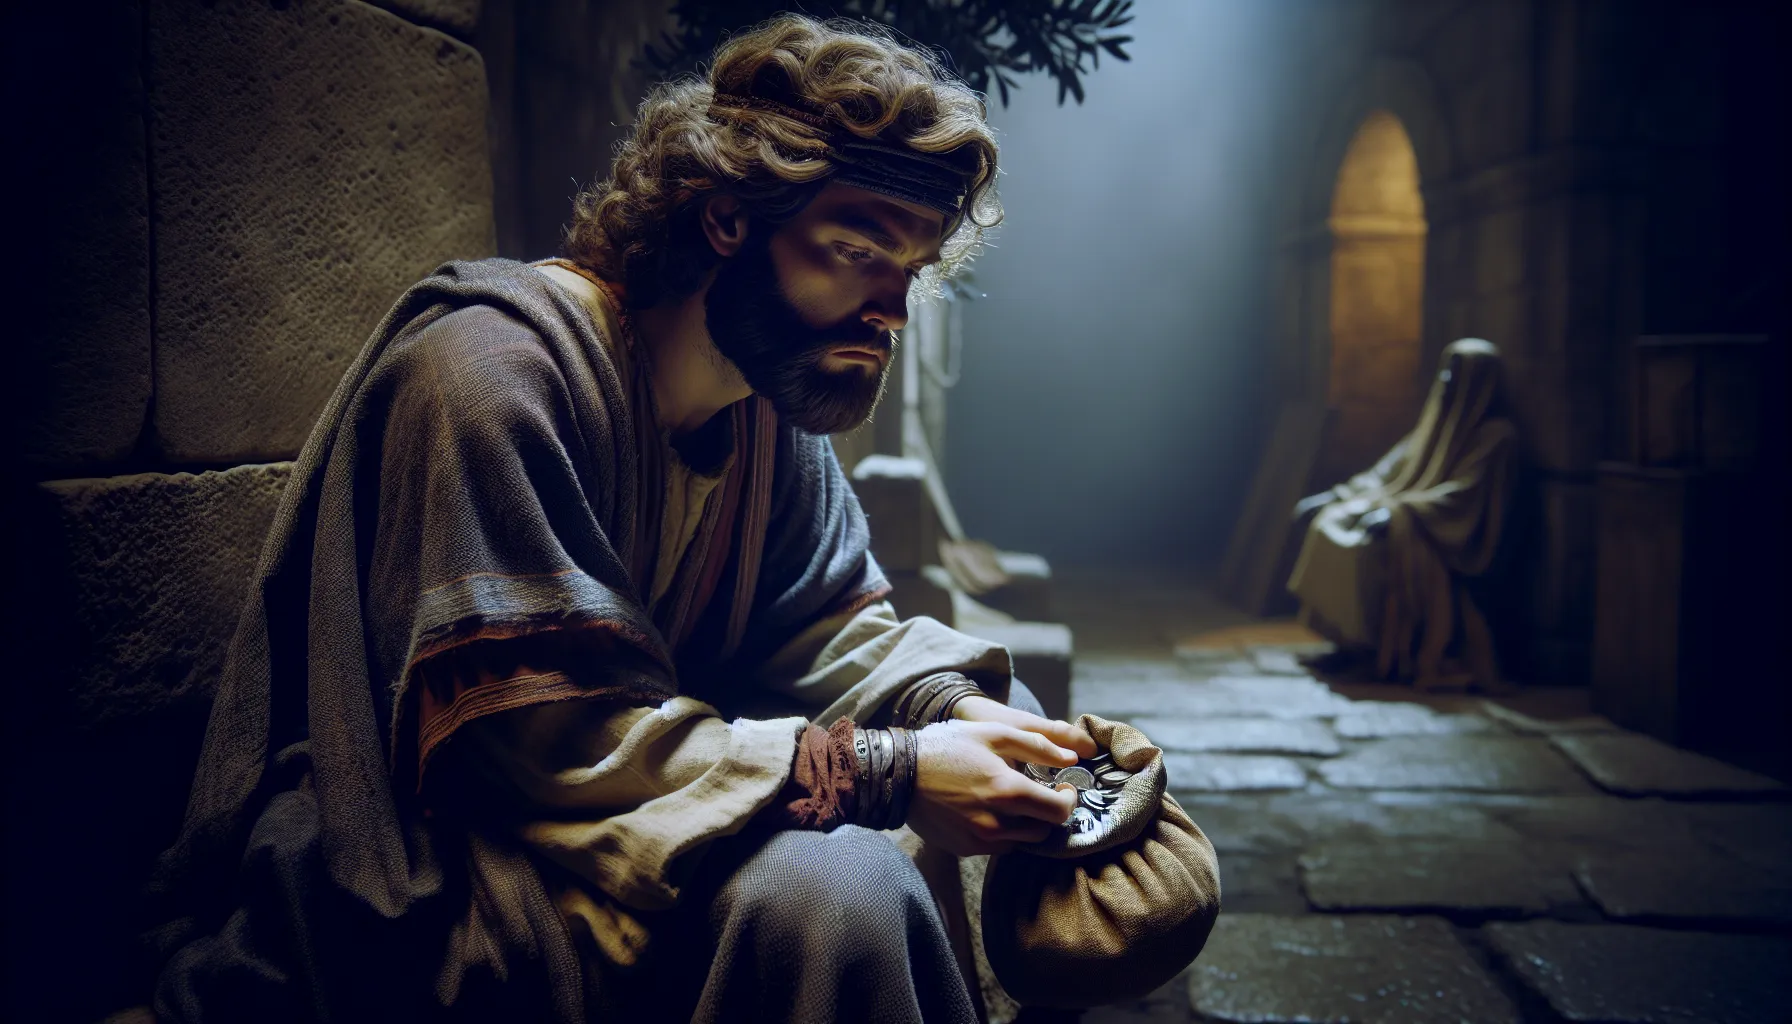 Representación artística de Judas Iscariote contemplando su destino final